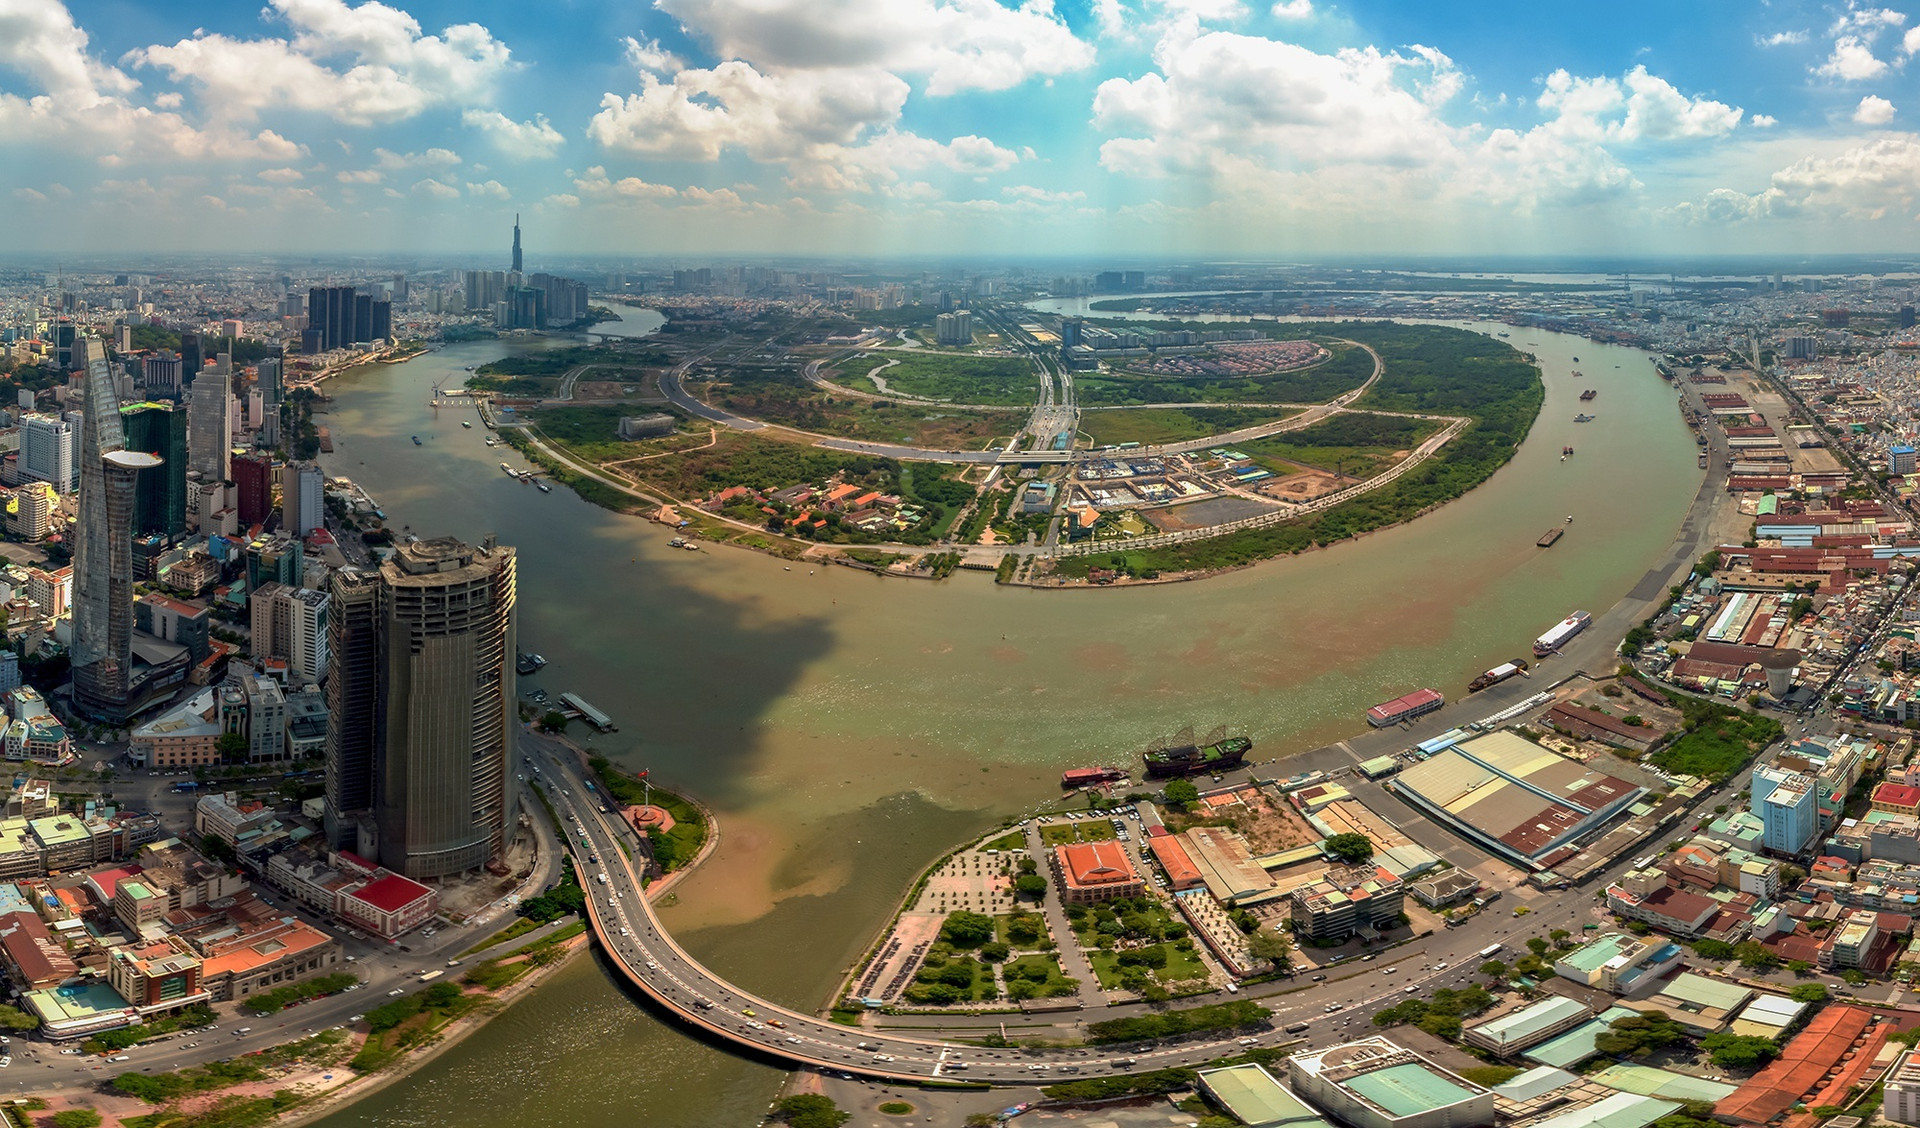 Bản tin 7 ngày địa ốc: Nhiều cơ hội cho bất động sản khu công nghiệp, Thành phố Hồ Chí Minh sẽ đấu giá lại 4 lô đất ở Thủ Thiêm